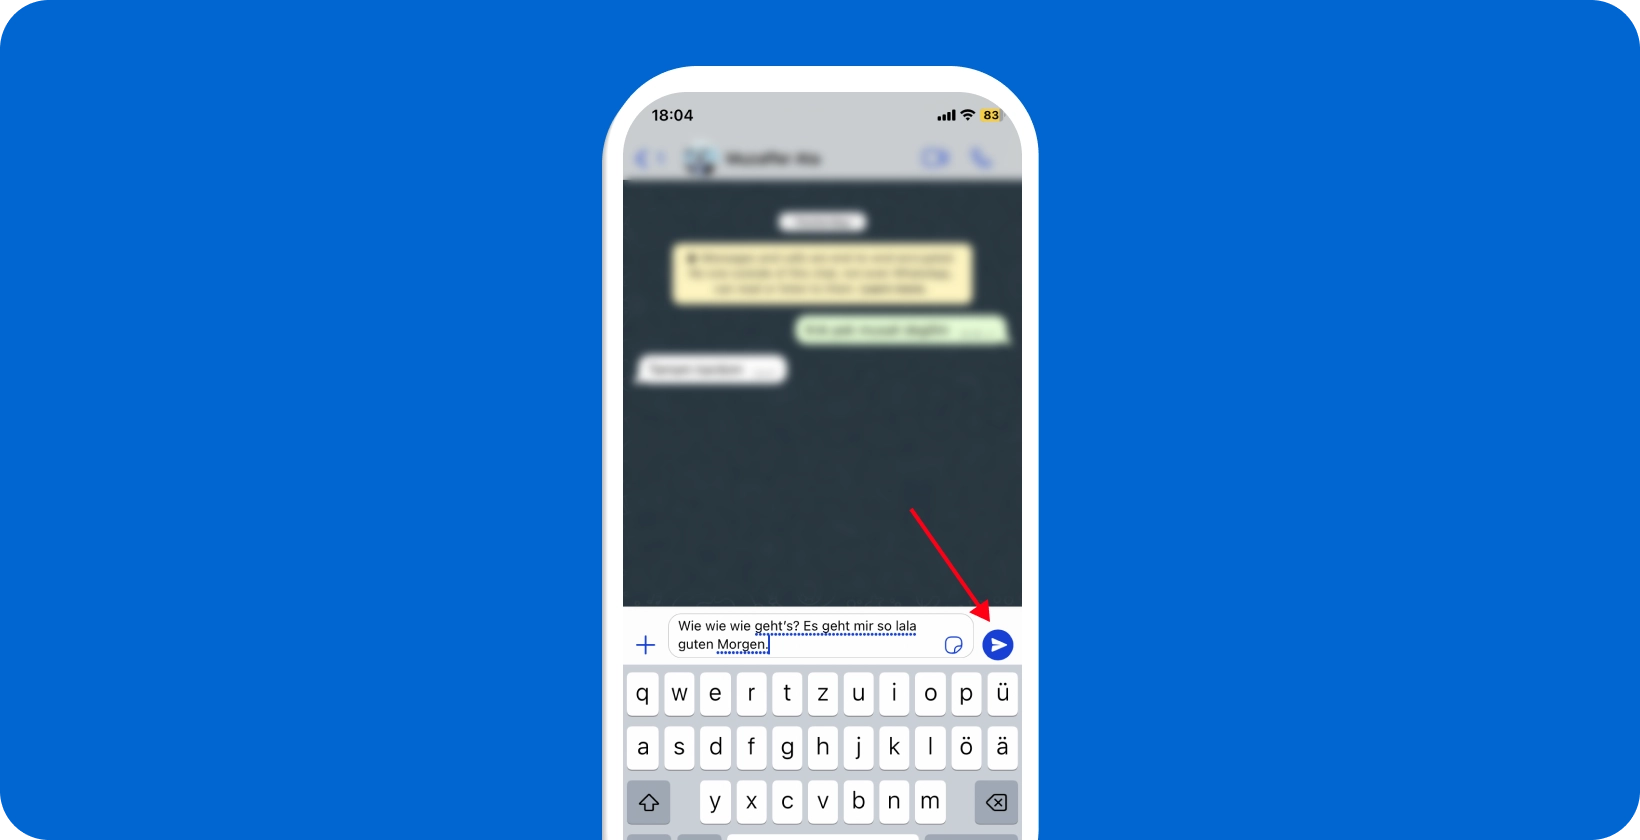 Akıllı telefon ekranı, WhatsApp'in sesli dikte özelliğinin kullanıldığını ve bir mikrofon simgesinin vurgulandığını gösteriyor.